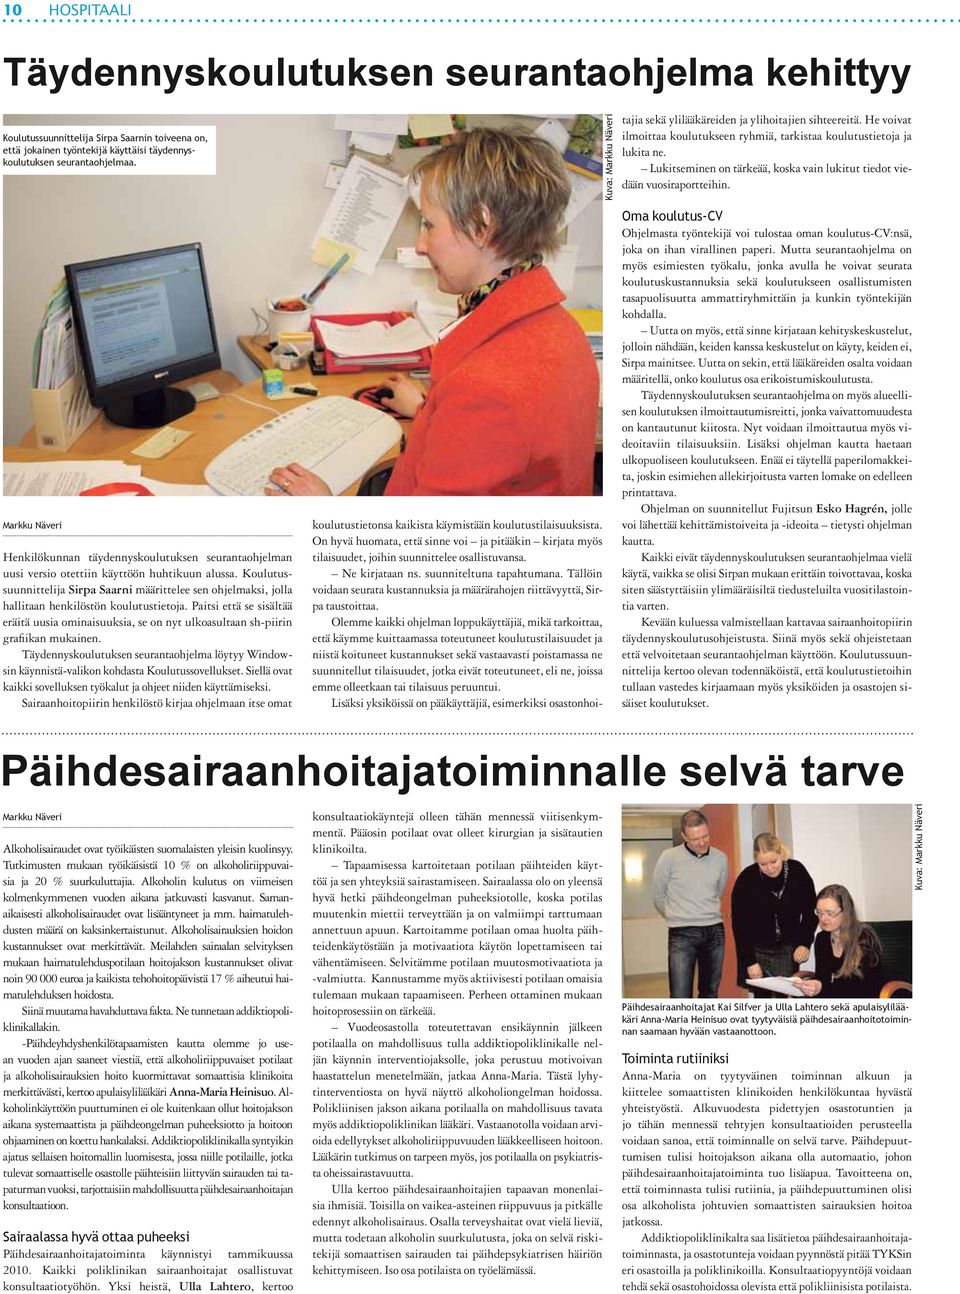 Koulutussuunnittelija Sirpa Saarni määrittelee sen ohjelmaksi, jolla hallitaan henkilöstön koulutustietoja.